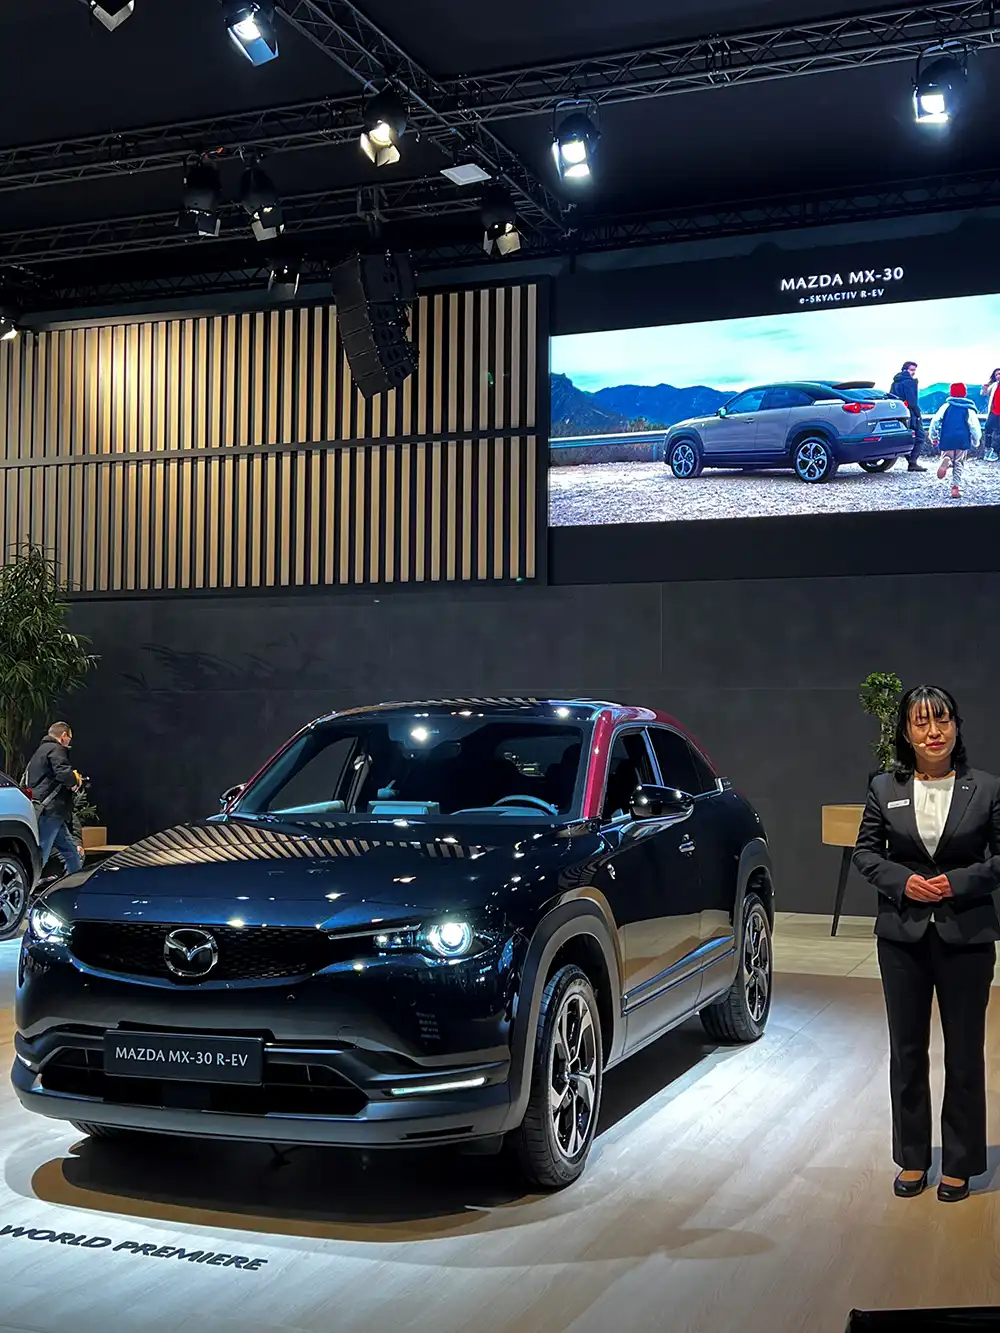 Der Mazda MX-30 R-EV debütiert 2023 auf dem Autosalon in Brüssel, passgenau zum 60. Jubiläum des ersten Serien-Automobils mit Kreiskolbenmoto.